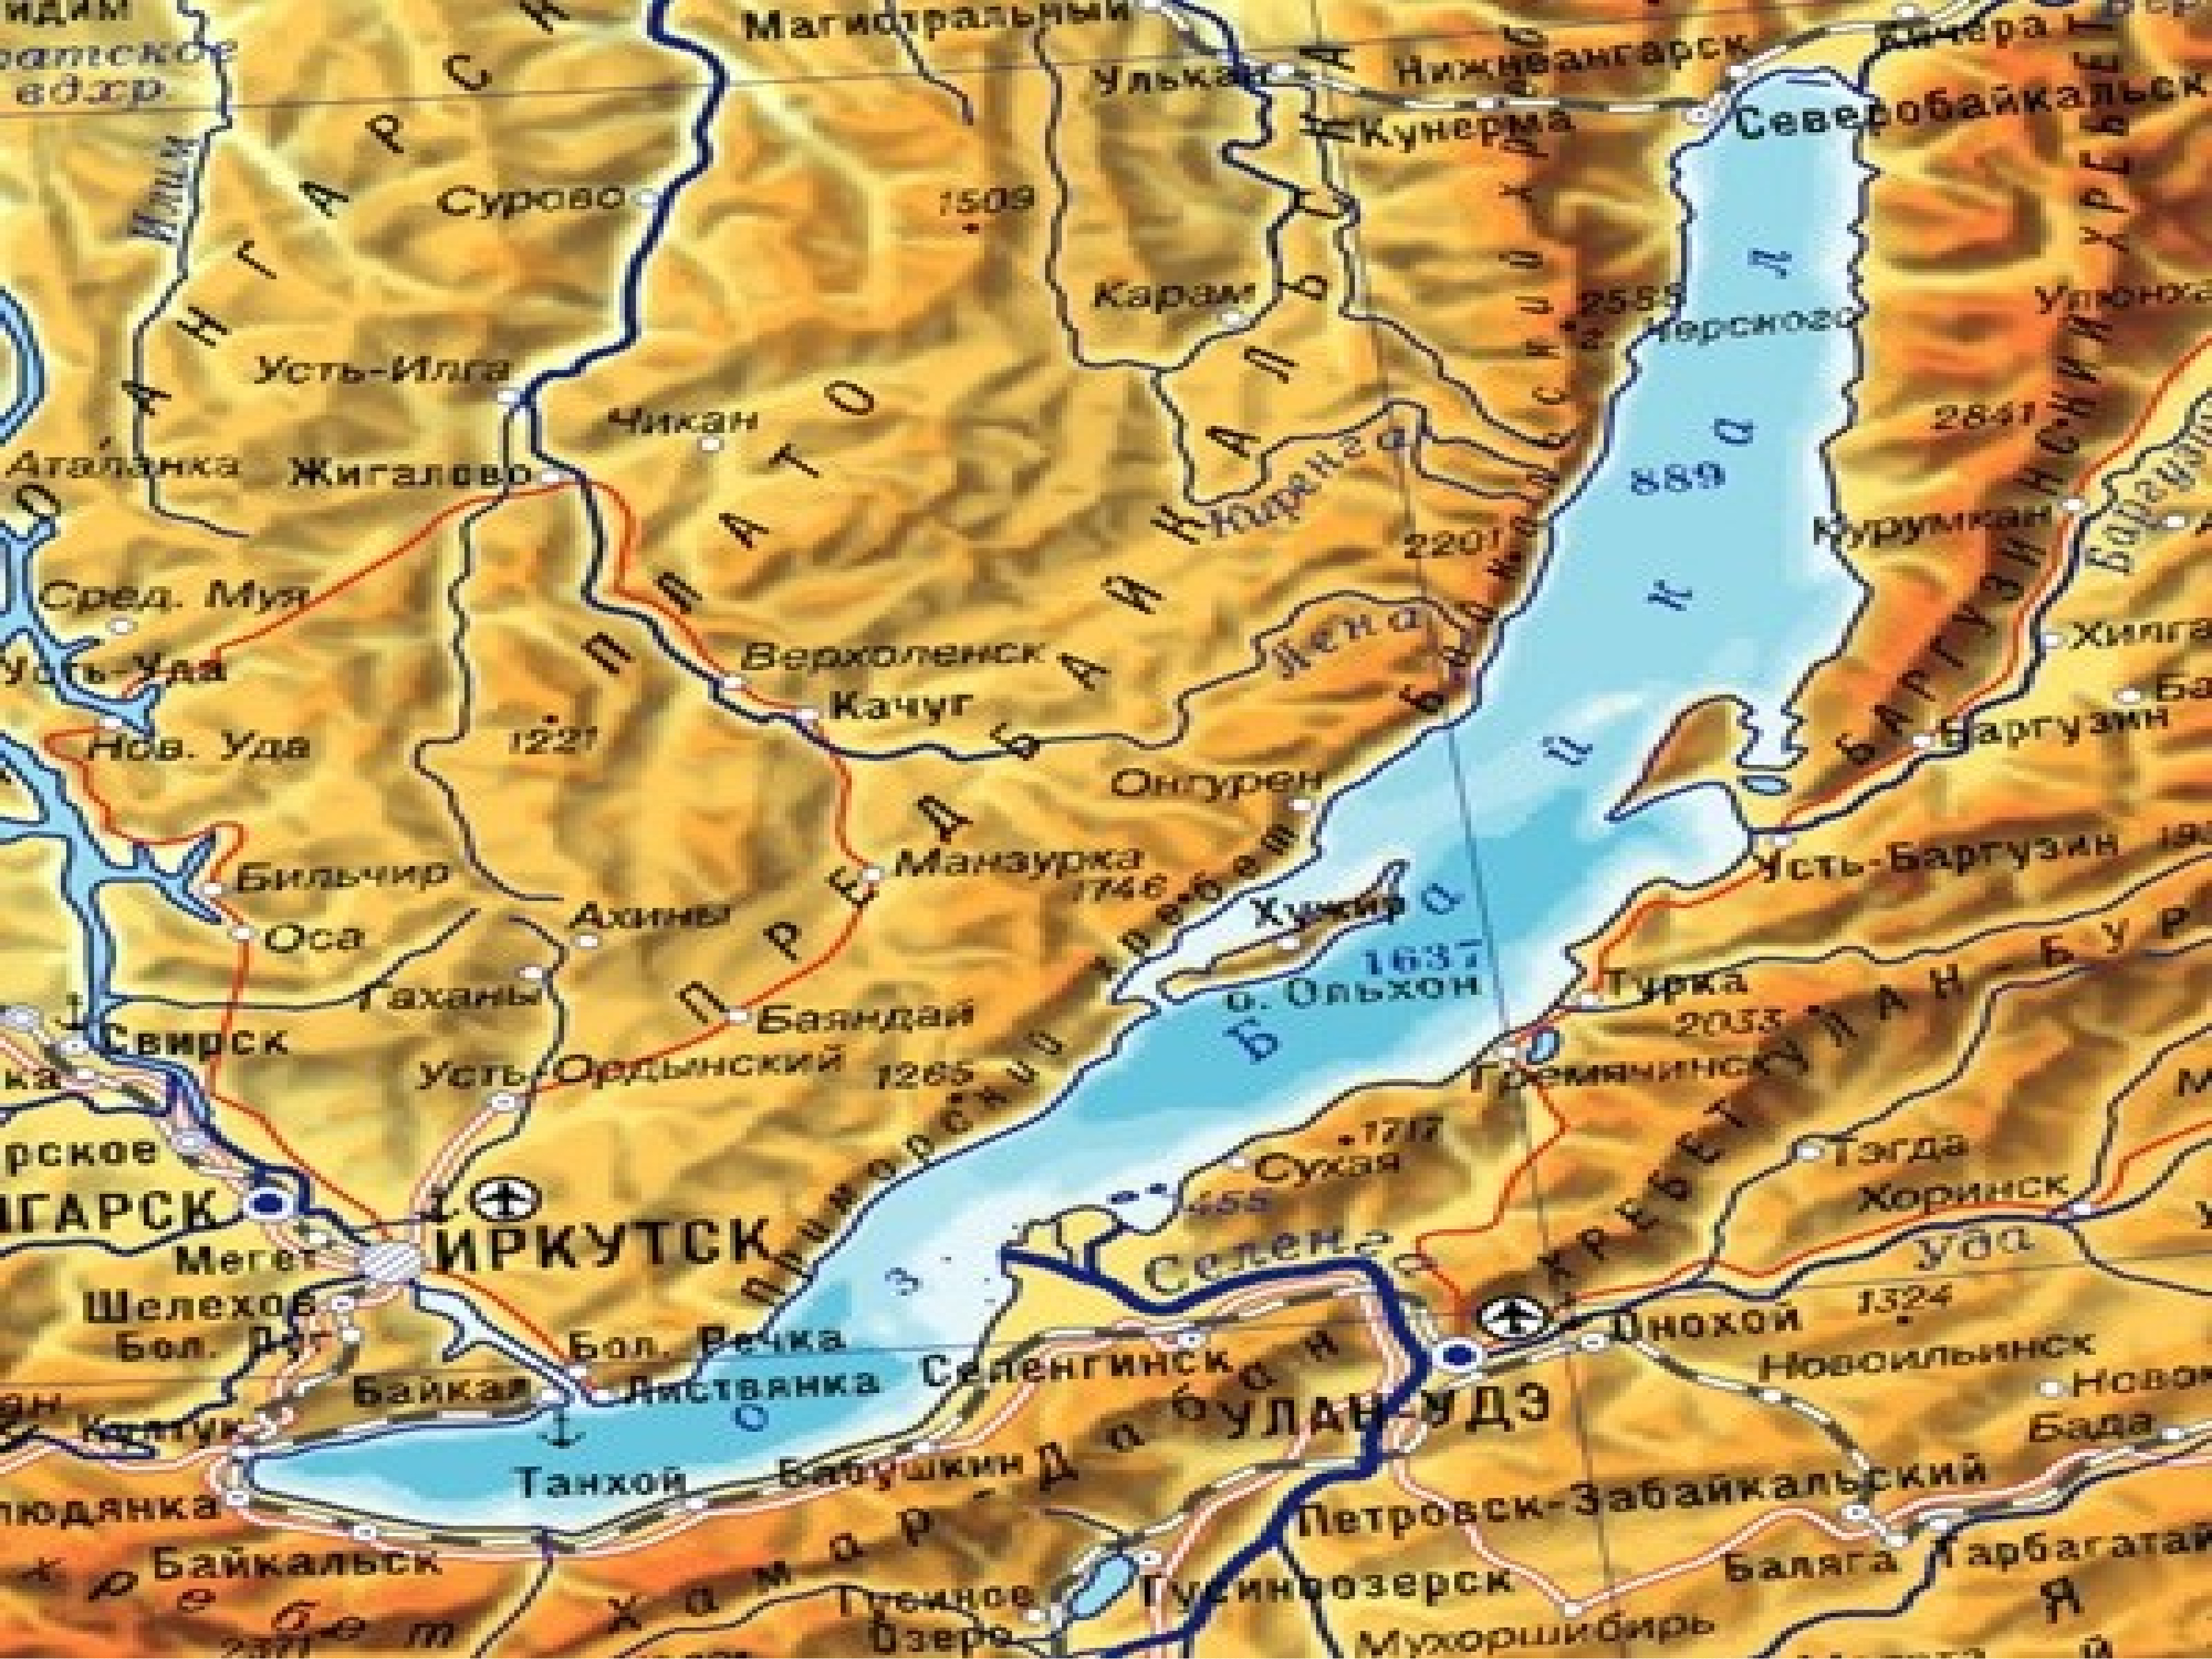 Фото карты местоположения. Озеро Байкал на карте. Озеро Байкал карта географическая. Географическое положение озера Байкал. Карта озеро Байкал на карте.